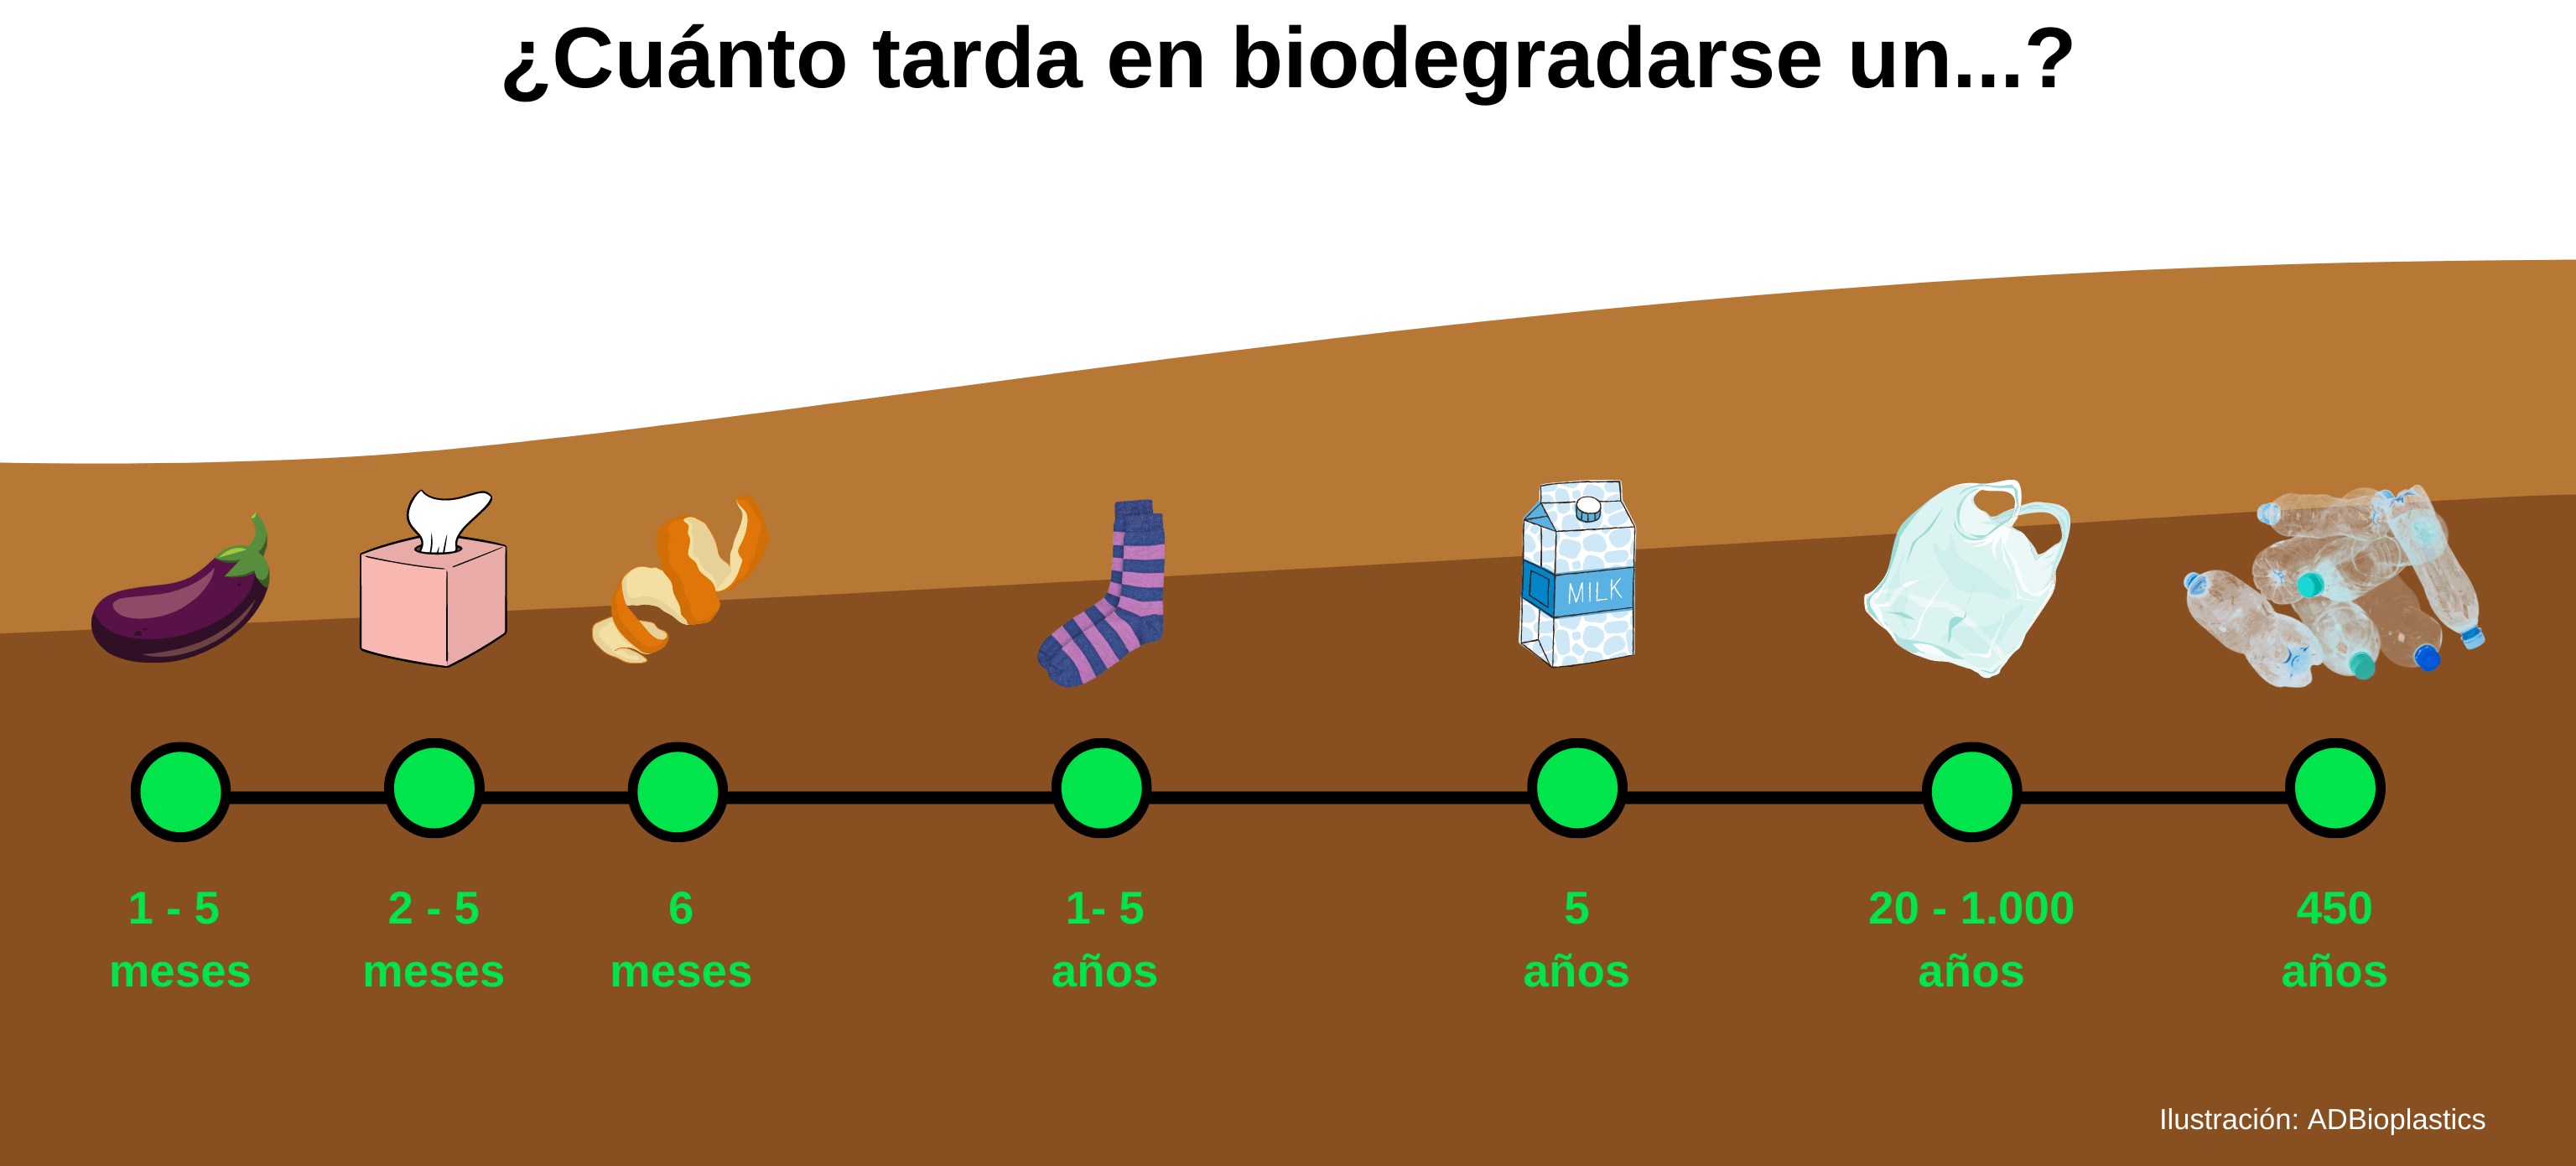 Tiempo de biodegradación de materiales y productos